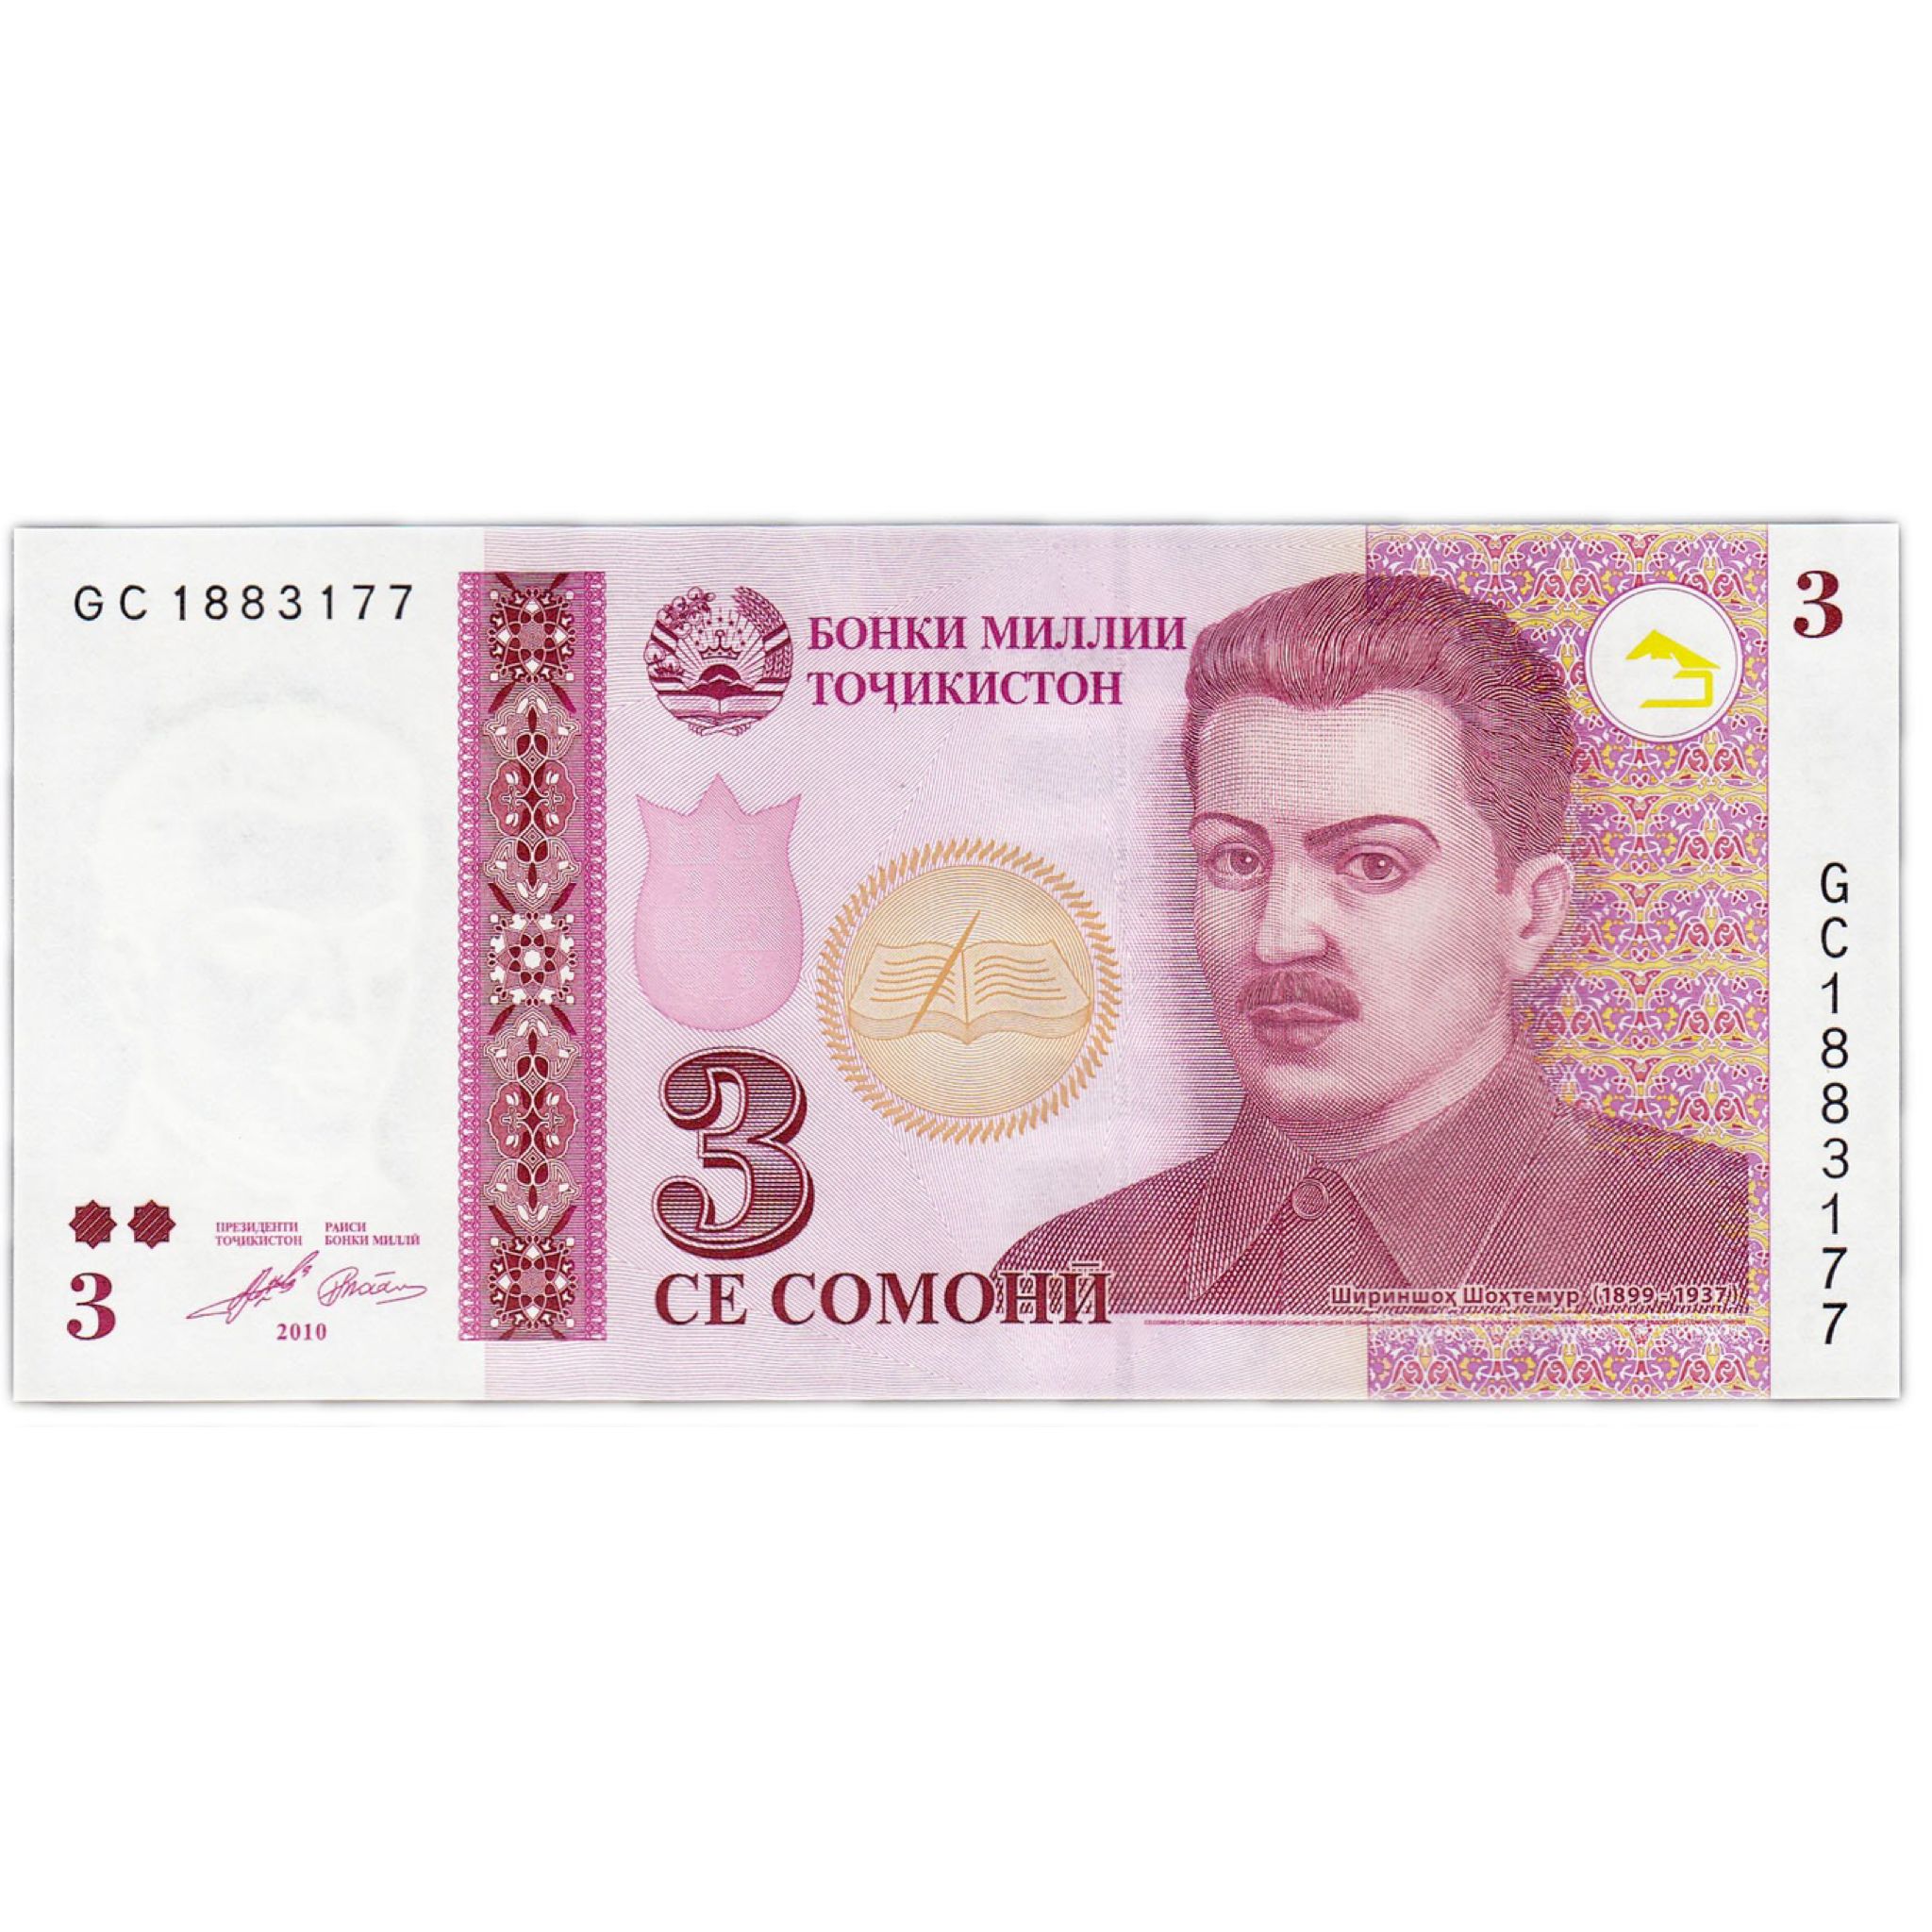 500 таджикски. Деньги Таджикистана. Купюры Таджикистана. Таджикские банкноты. Денежные купюры Таджикистана.